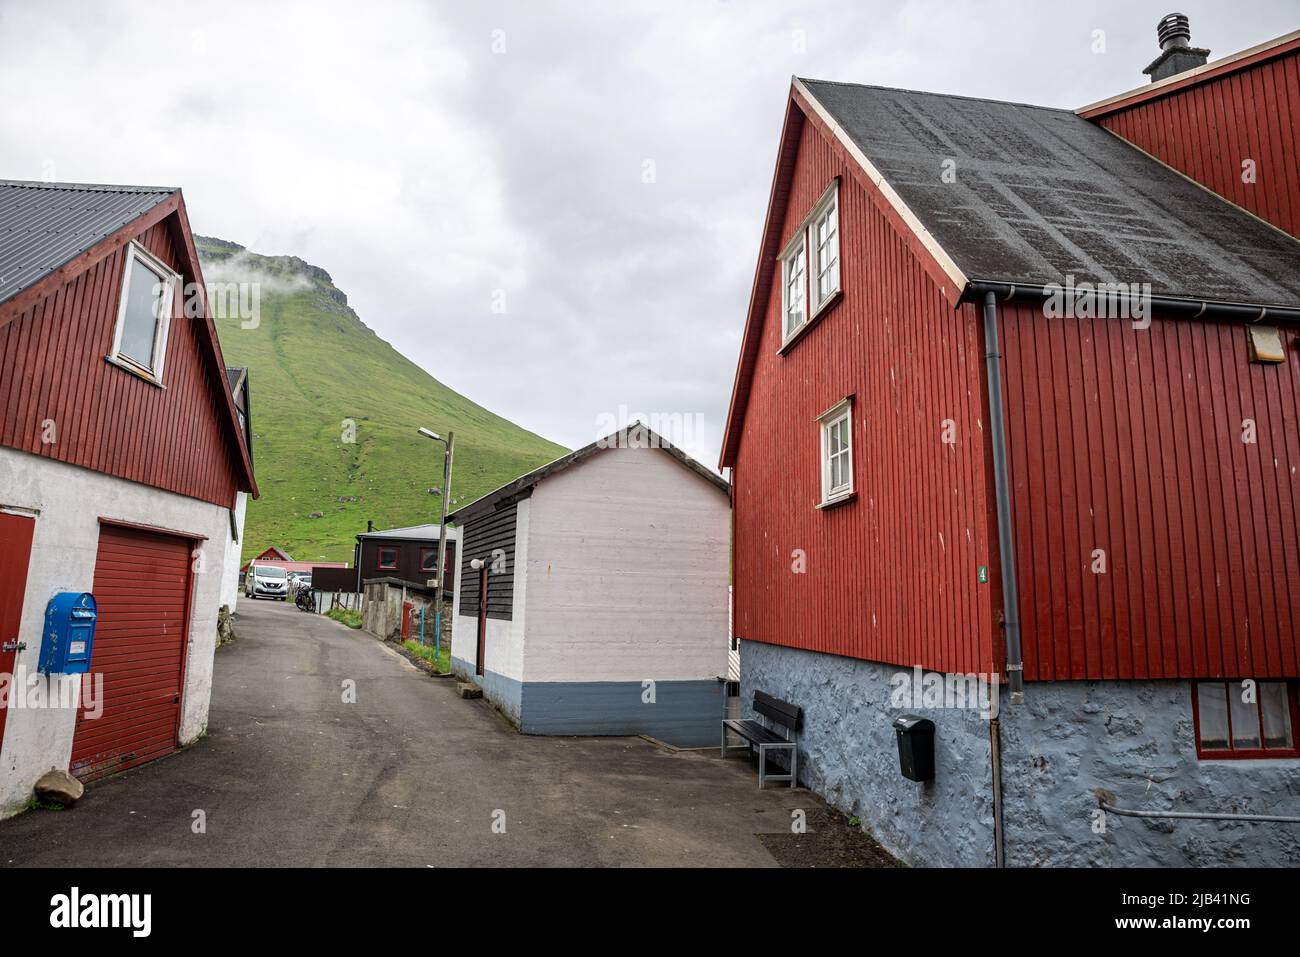 Trollanes village, Kalsoy Island, Faroe Islands Stock Photo